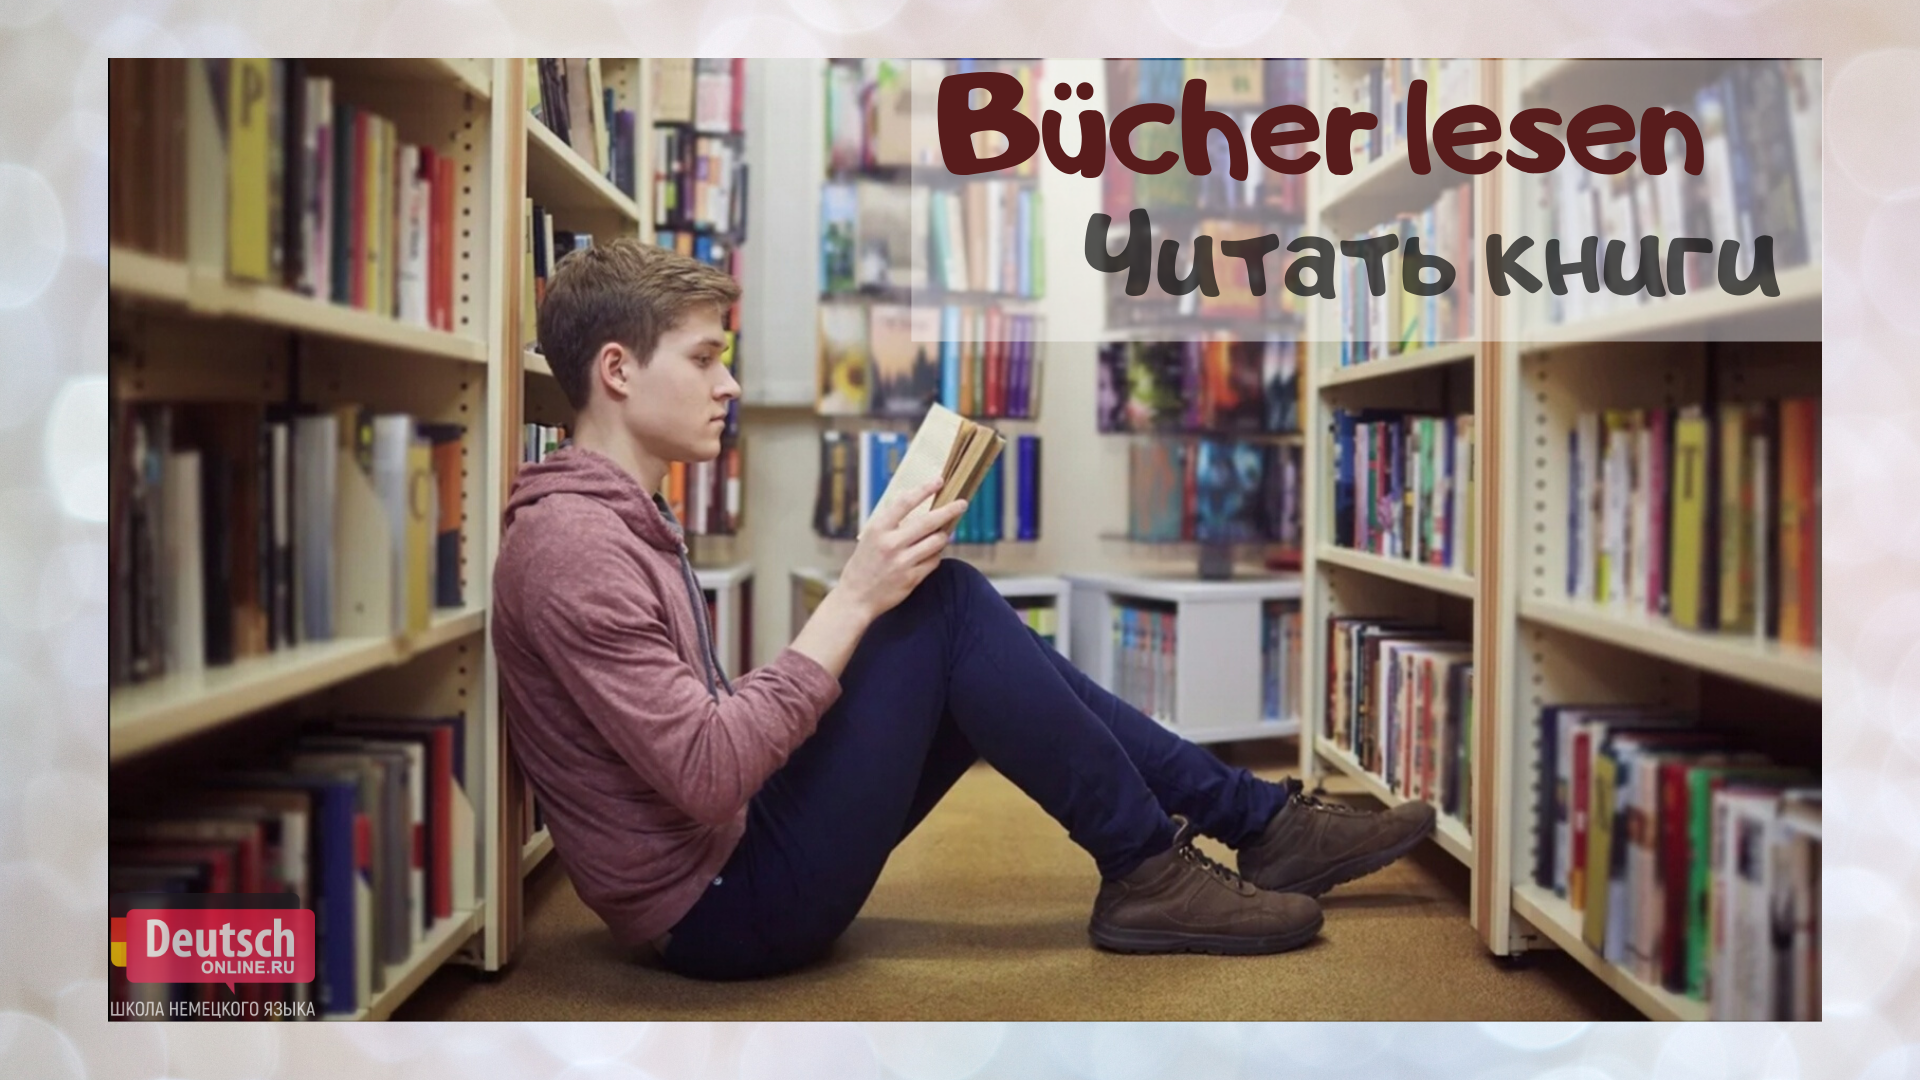 Book is useful. Подросток и книга в библиотеке. Мужчина в библиотеке. Подростки в библиотеке. Молодежь и книга.